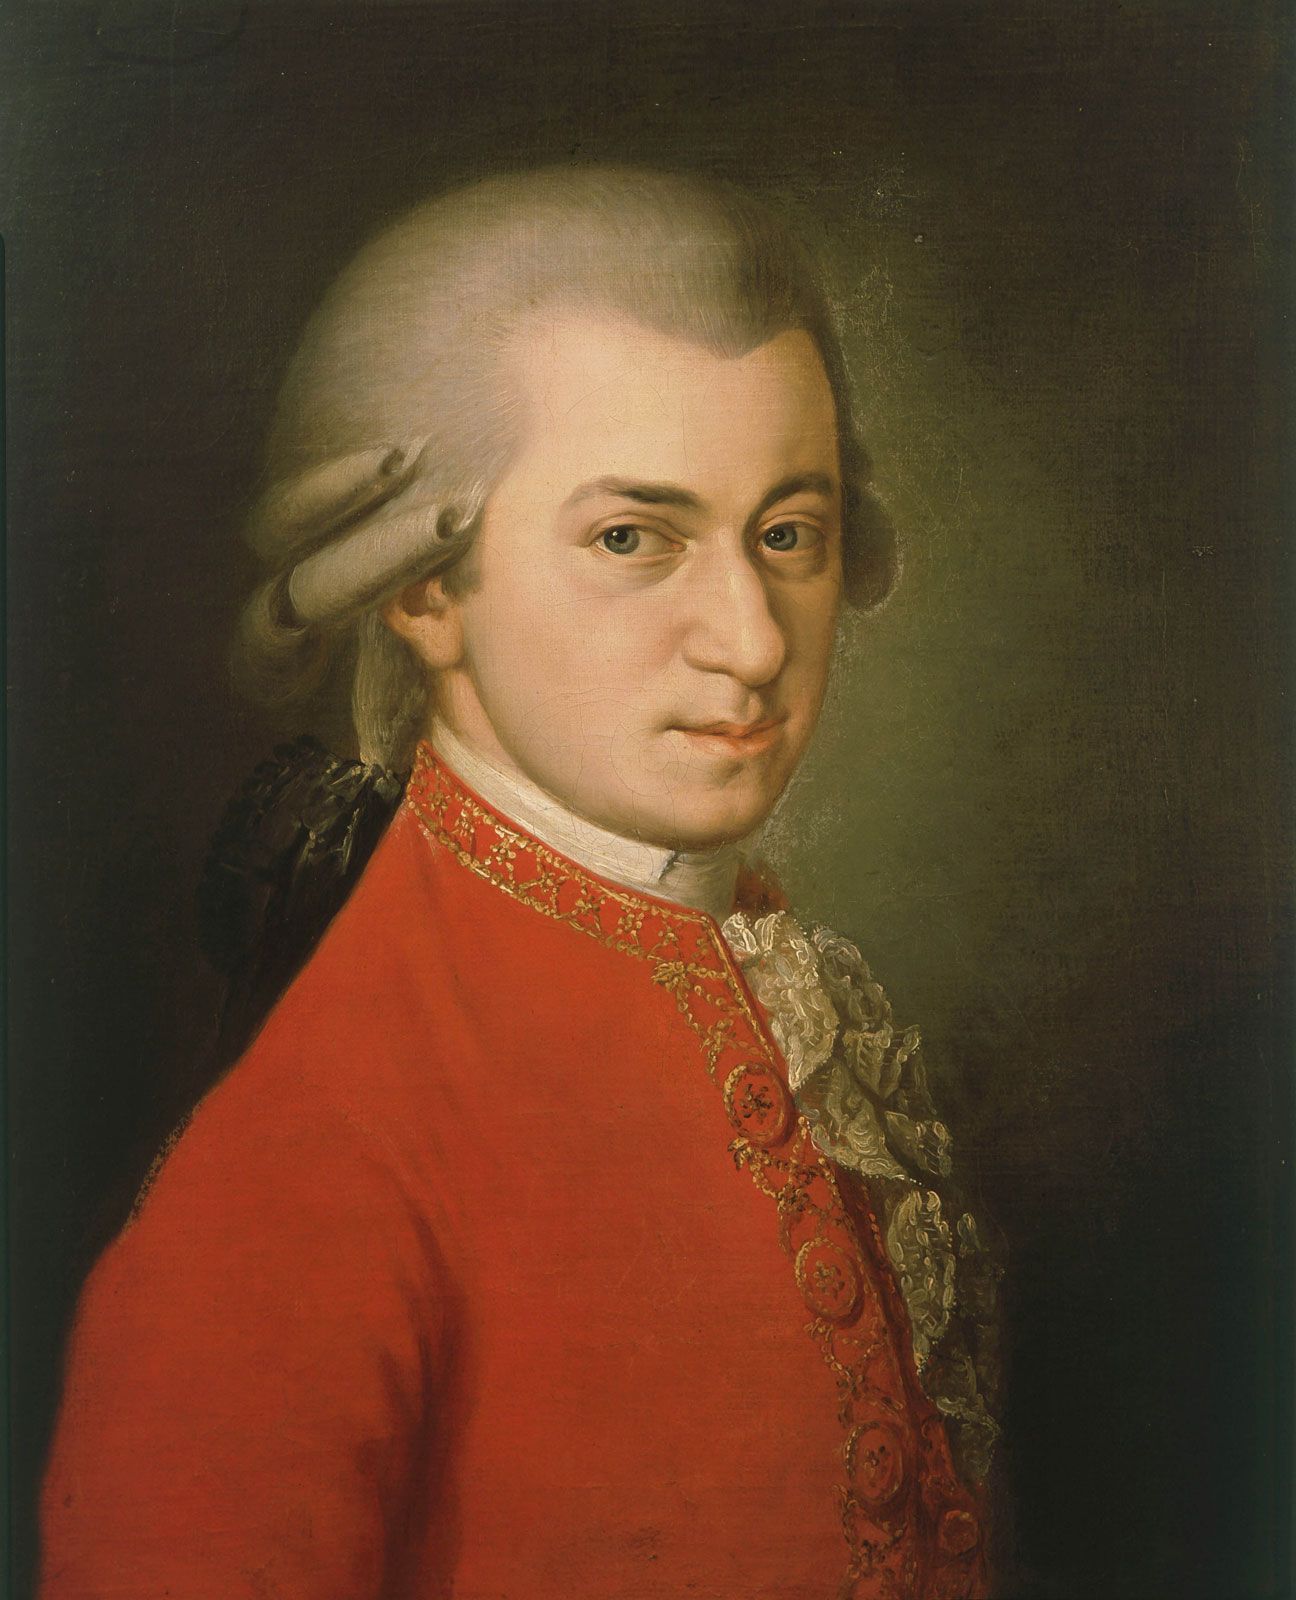  ຊີວະປະວັດຂອງ Wolfgang Amadeus Mozart